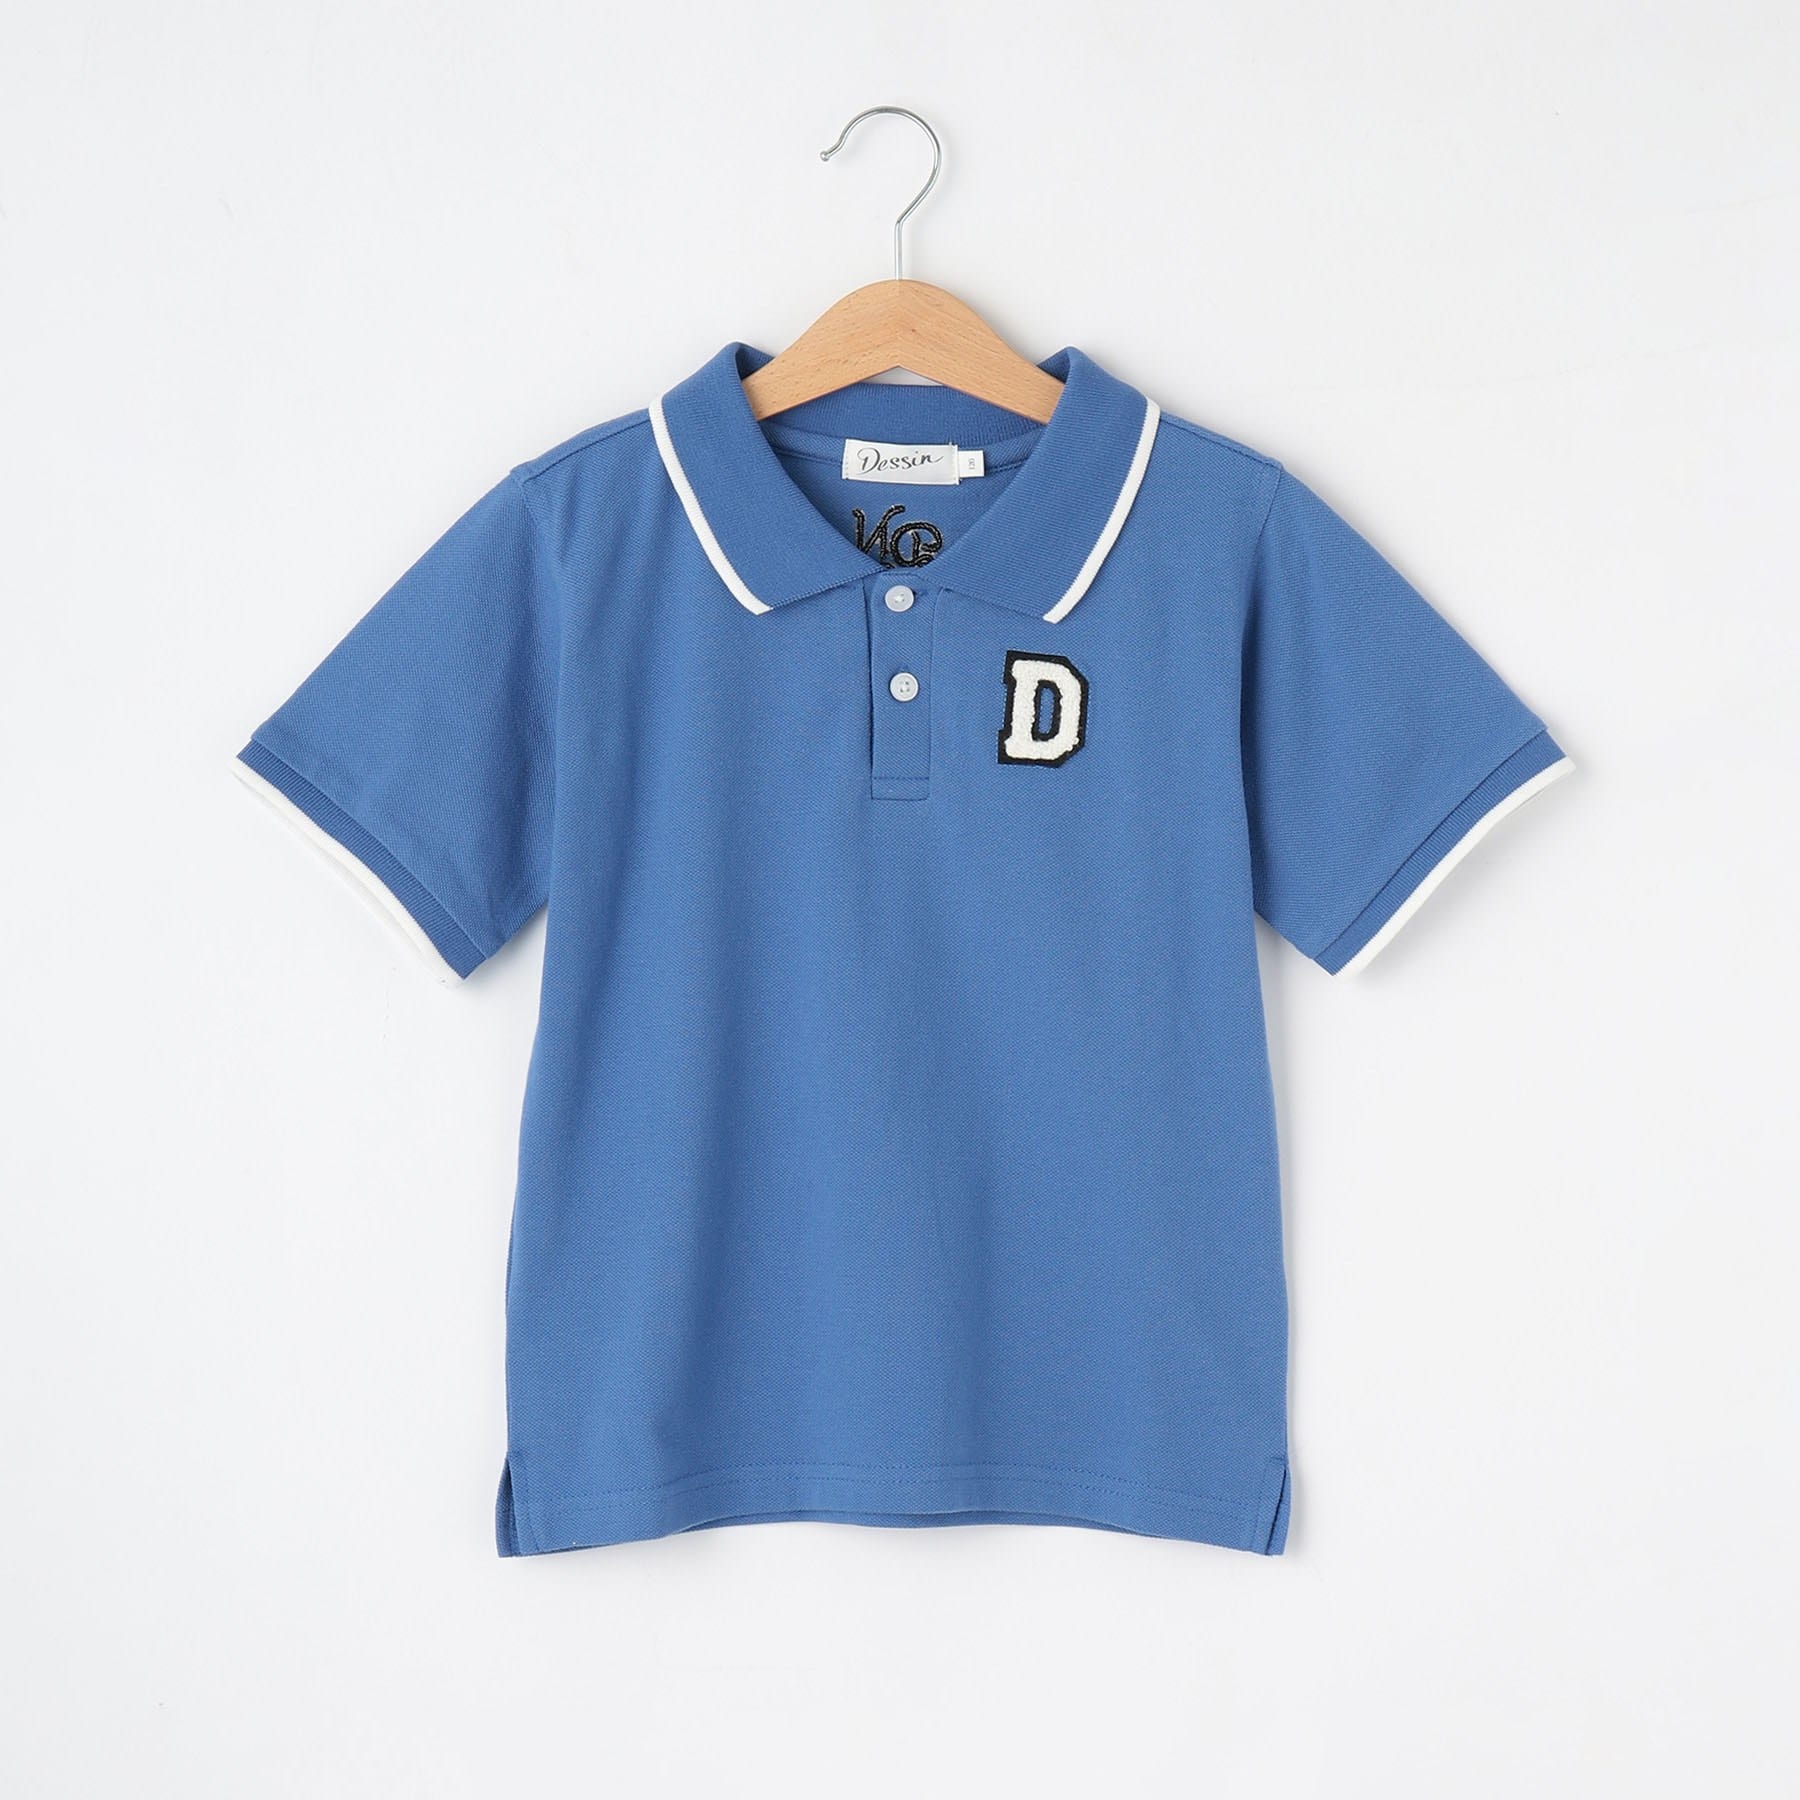 デッサン(キッズ)(Dessin(Kids))の【リンクコーデ】10周年ポロシャツ ブルー(092)